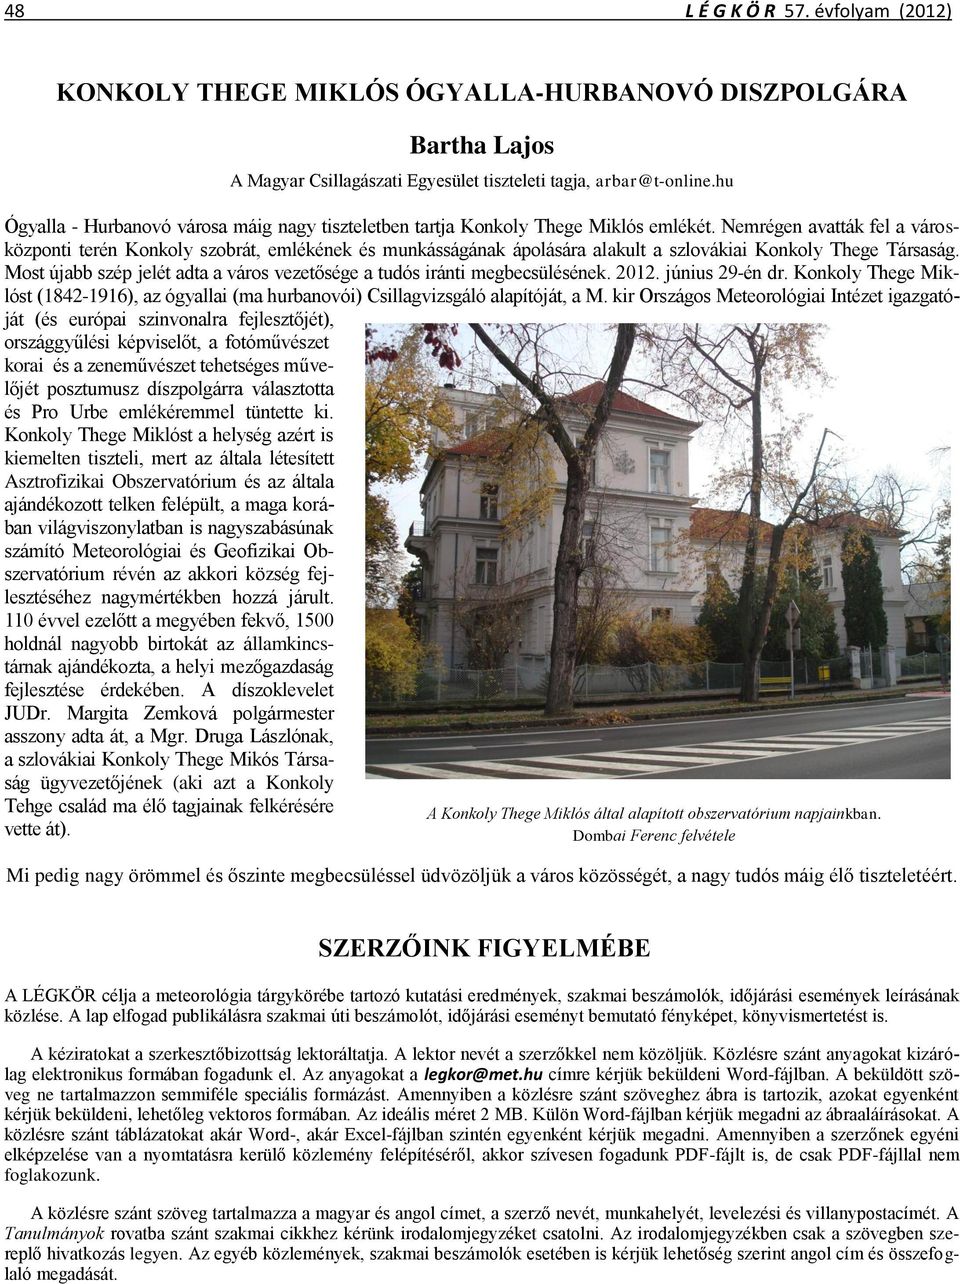 Nemrégen avatták fel a városközponti terén Konkoly szobrát, emlékének és munkásságának ápolására alakult a szlovákiai Konkoly Thege Társaság.